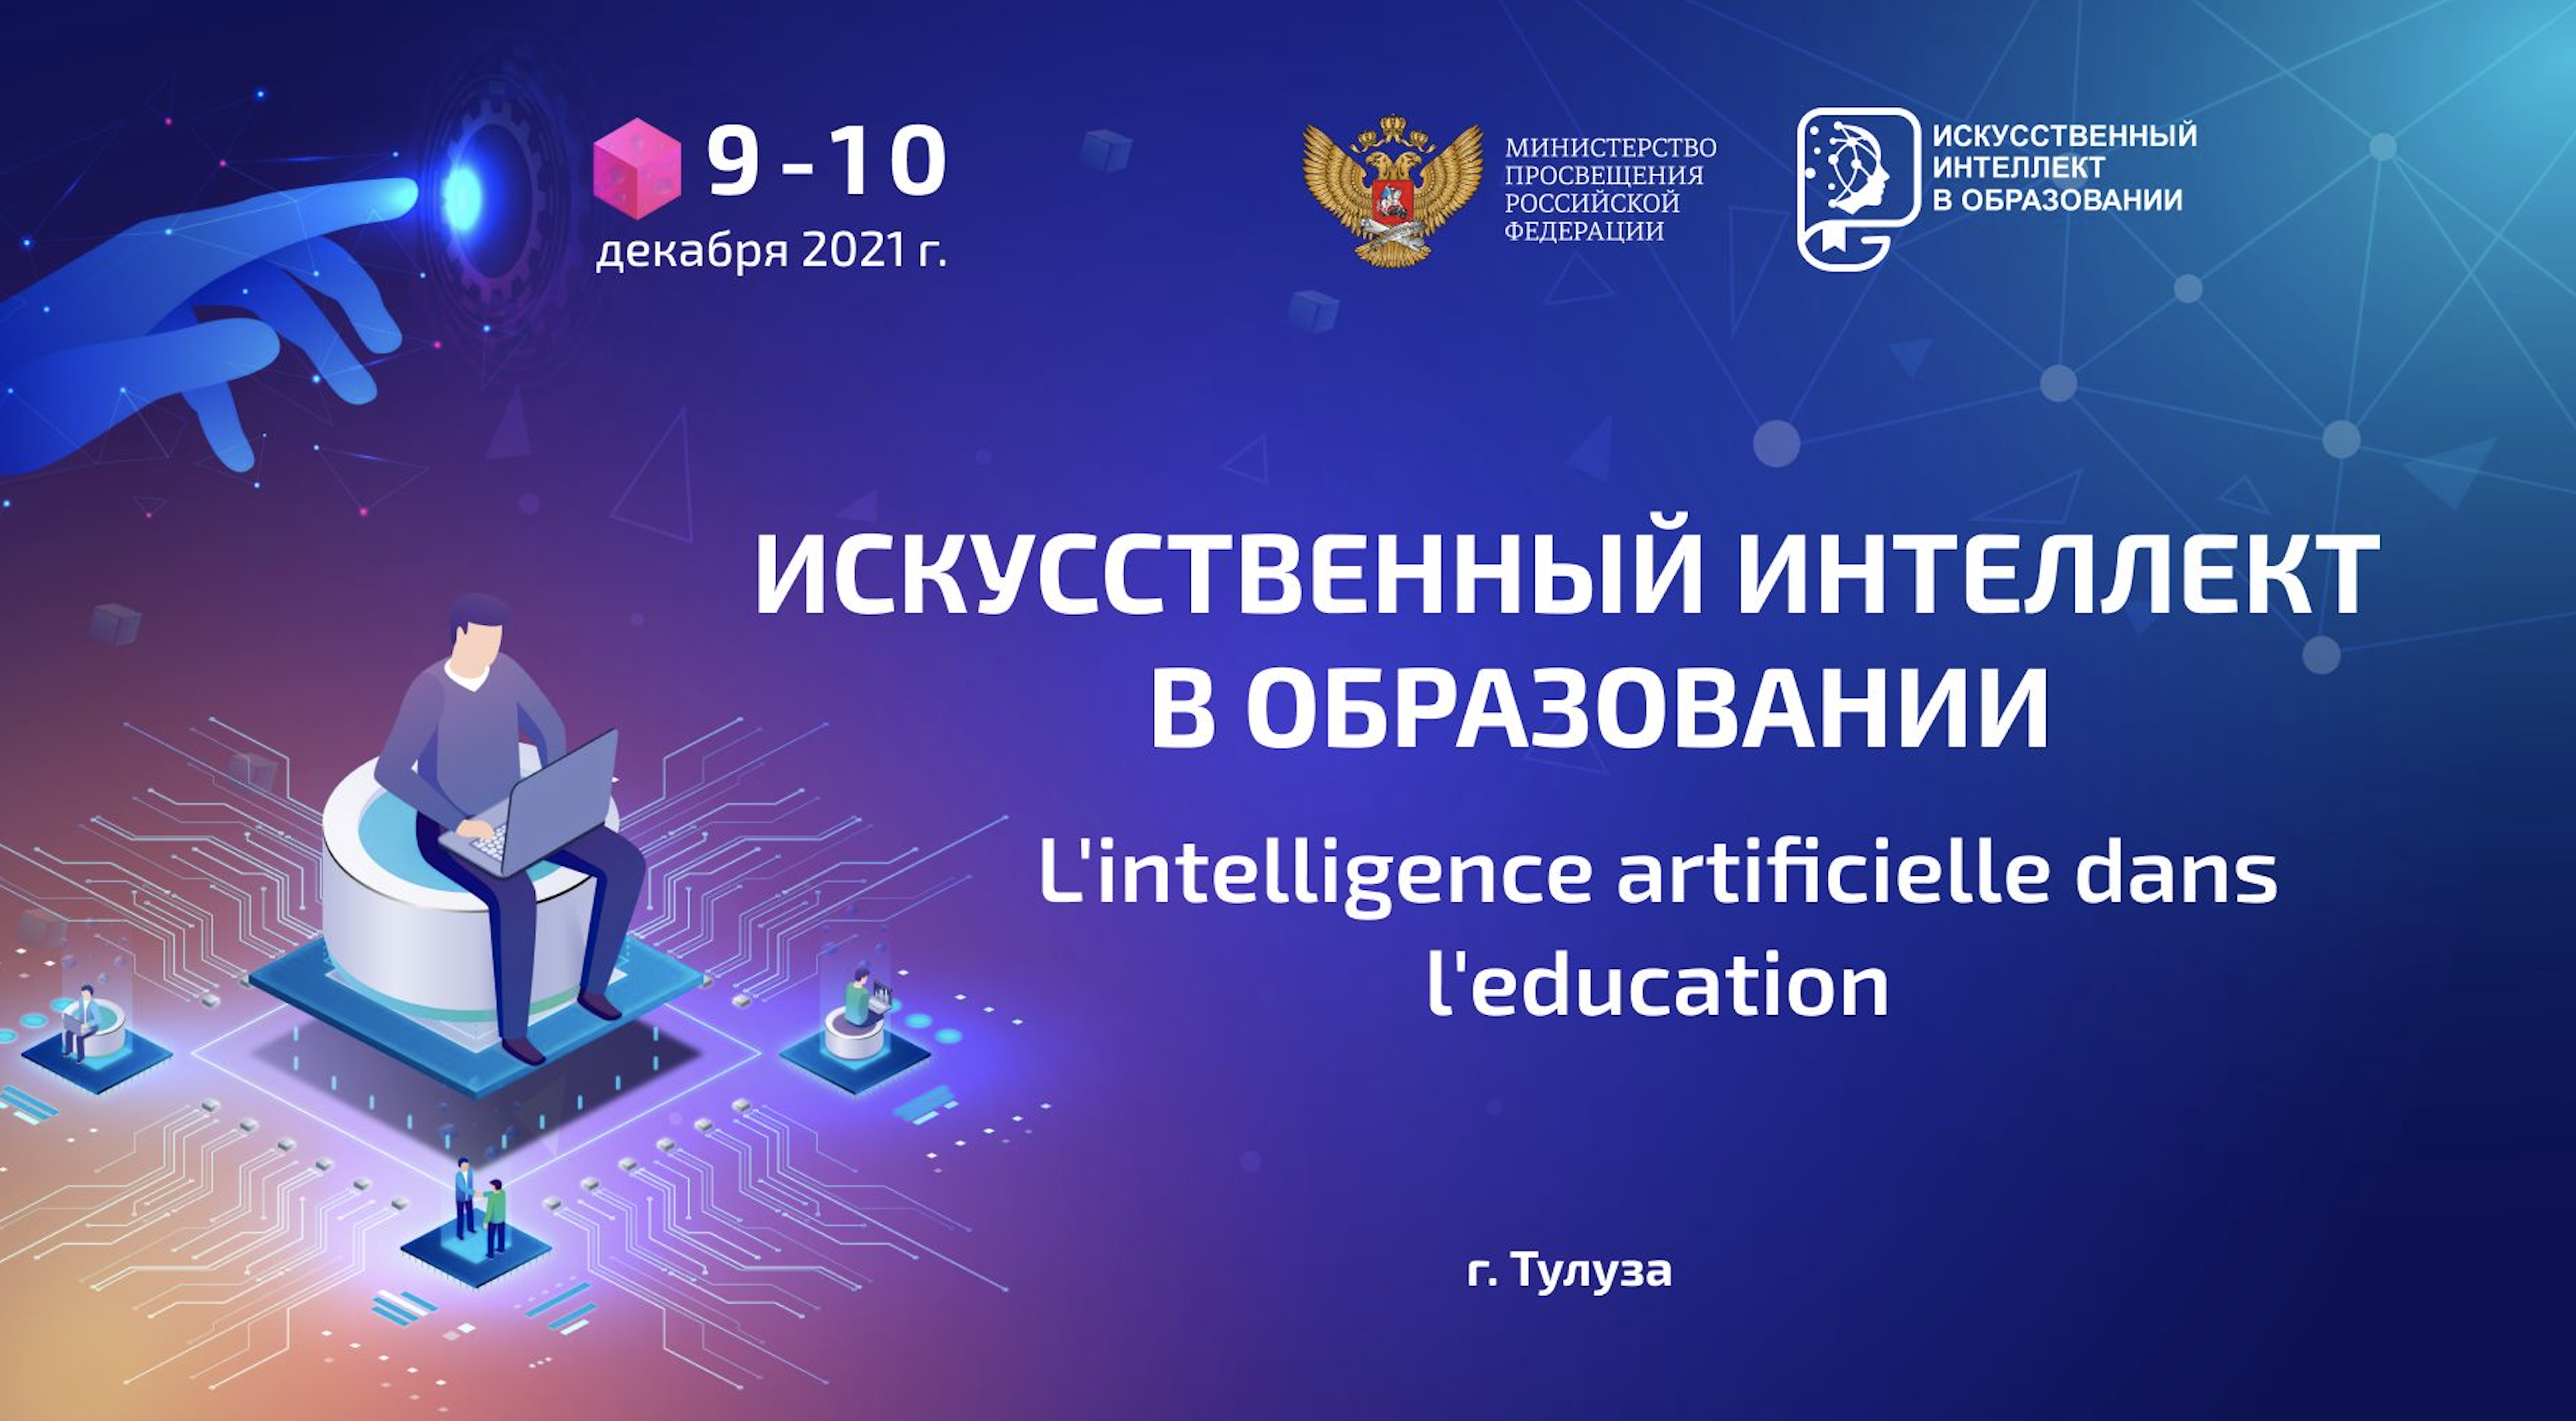 Les pédagogues russes et étrangers ont échangé leur expérience sur l’intégration de l’Intelligence Artificielle dans le système éducatif